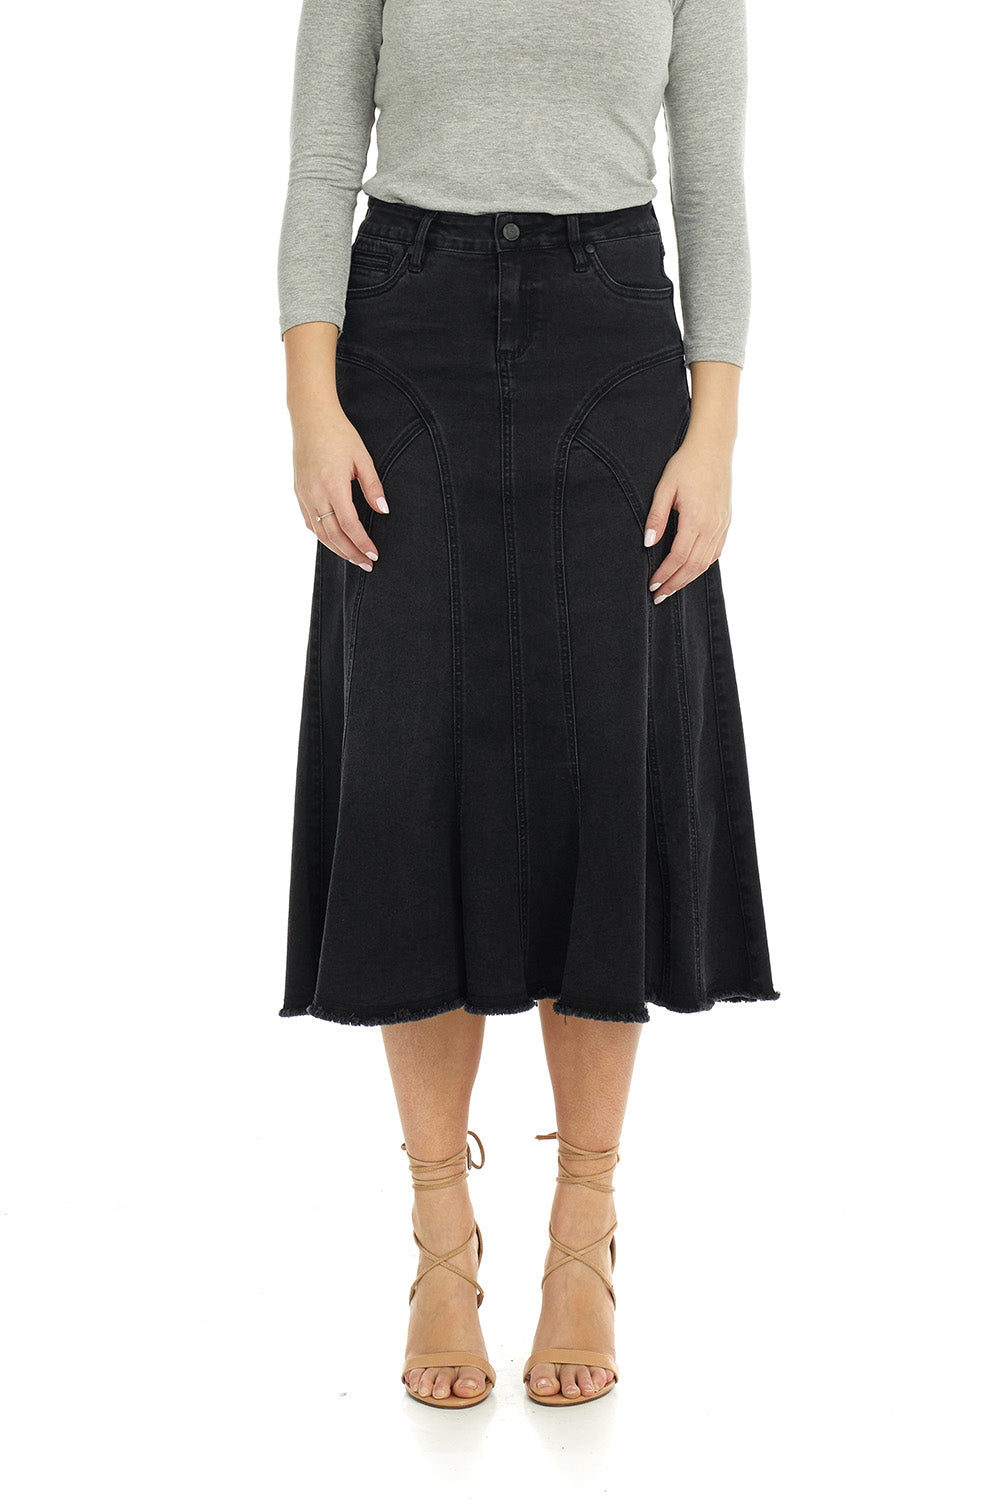 Long Denim Skirt, Tall Skirt, Denim Skirts Knee Length, Islamic Skirts,  dress skirts | alsharifa.com